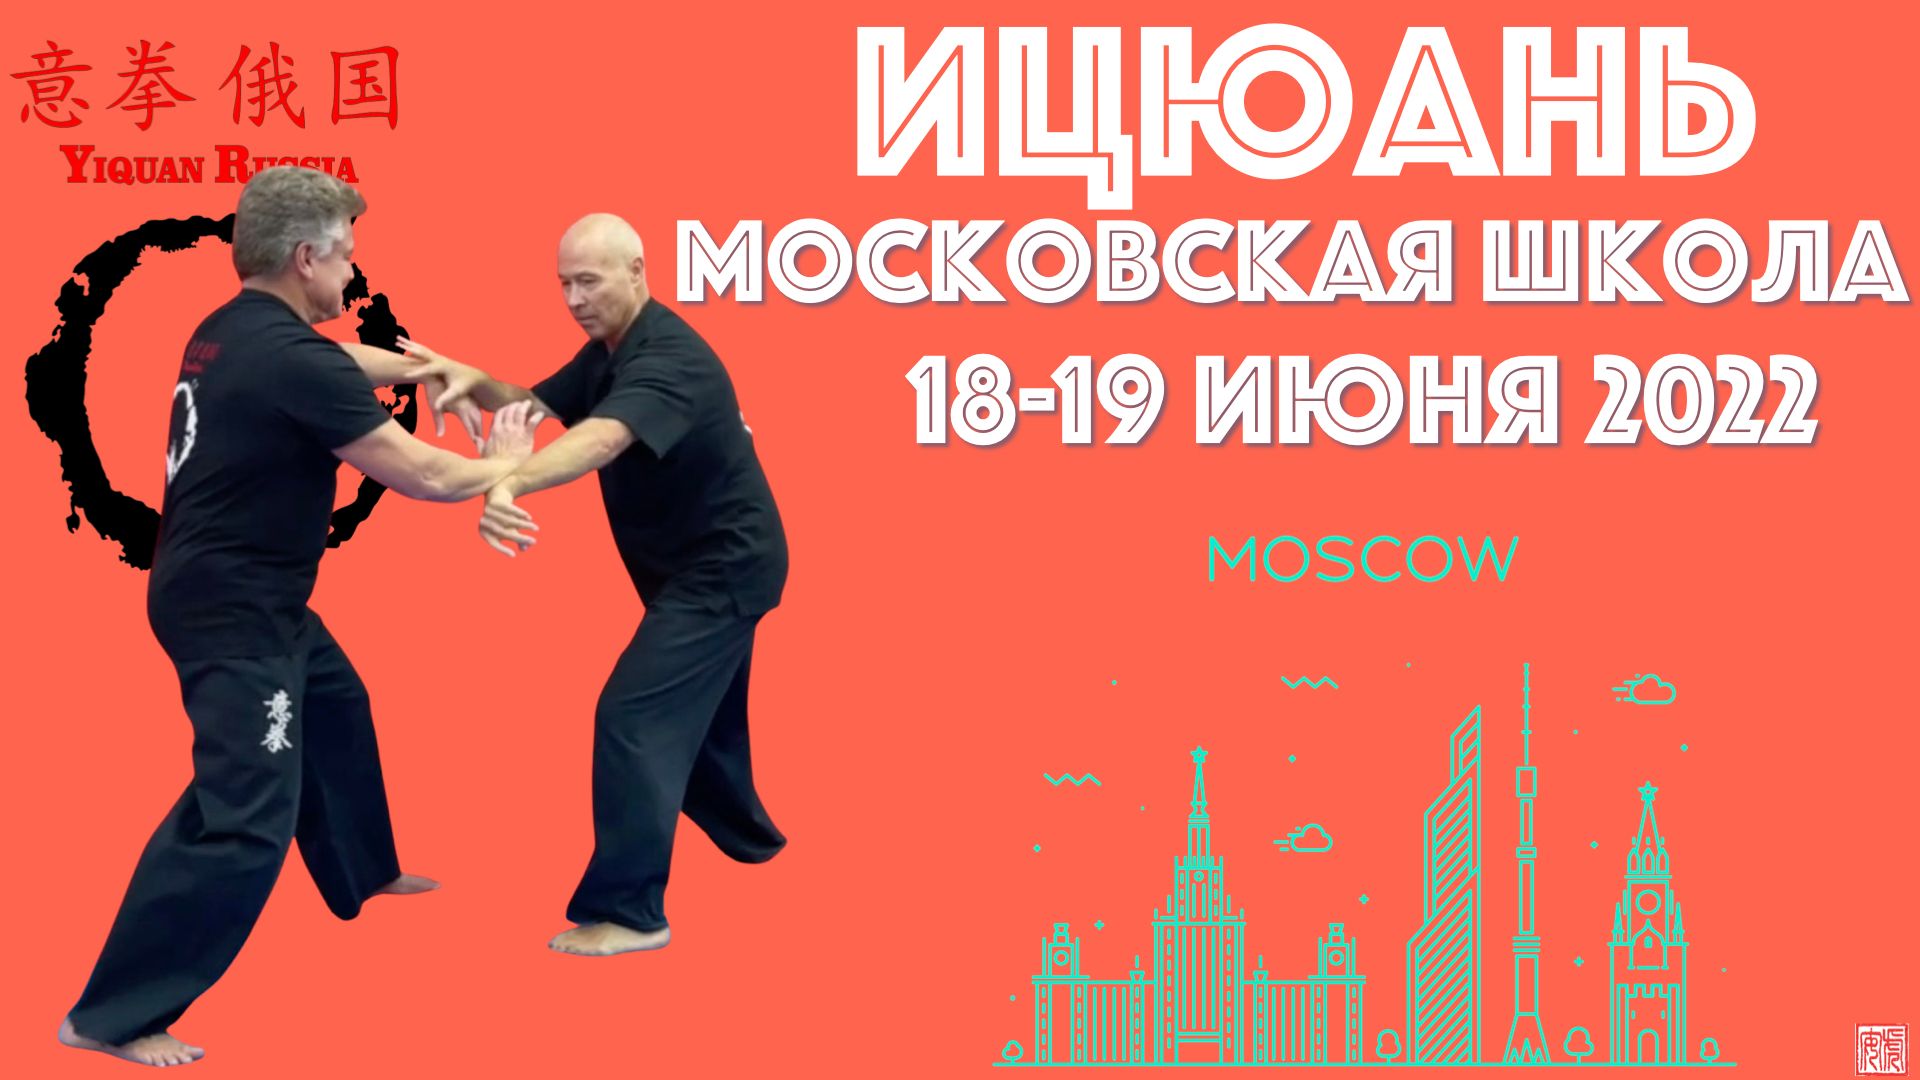 Московская Школа Ицюань, 18-19 июня 2022